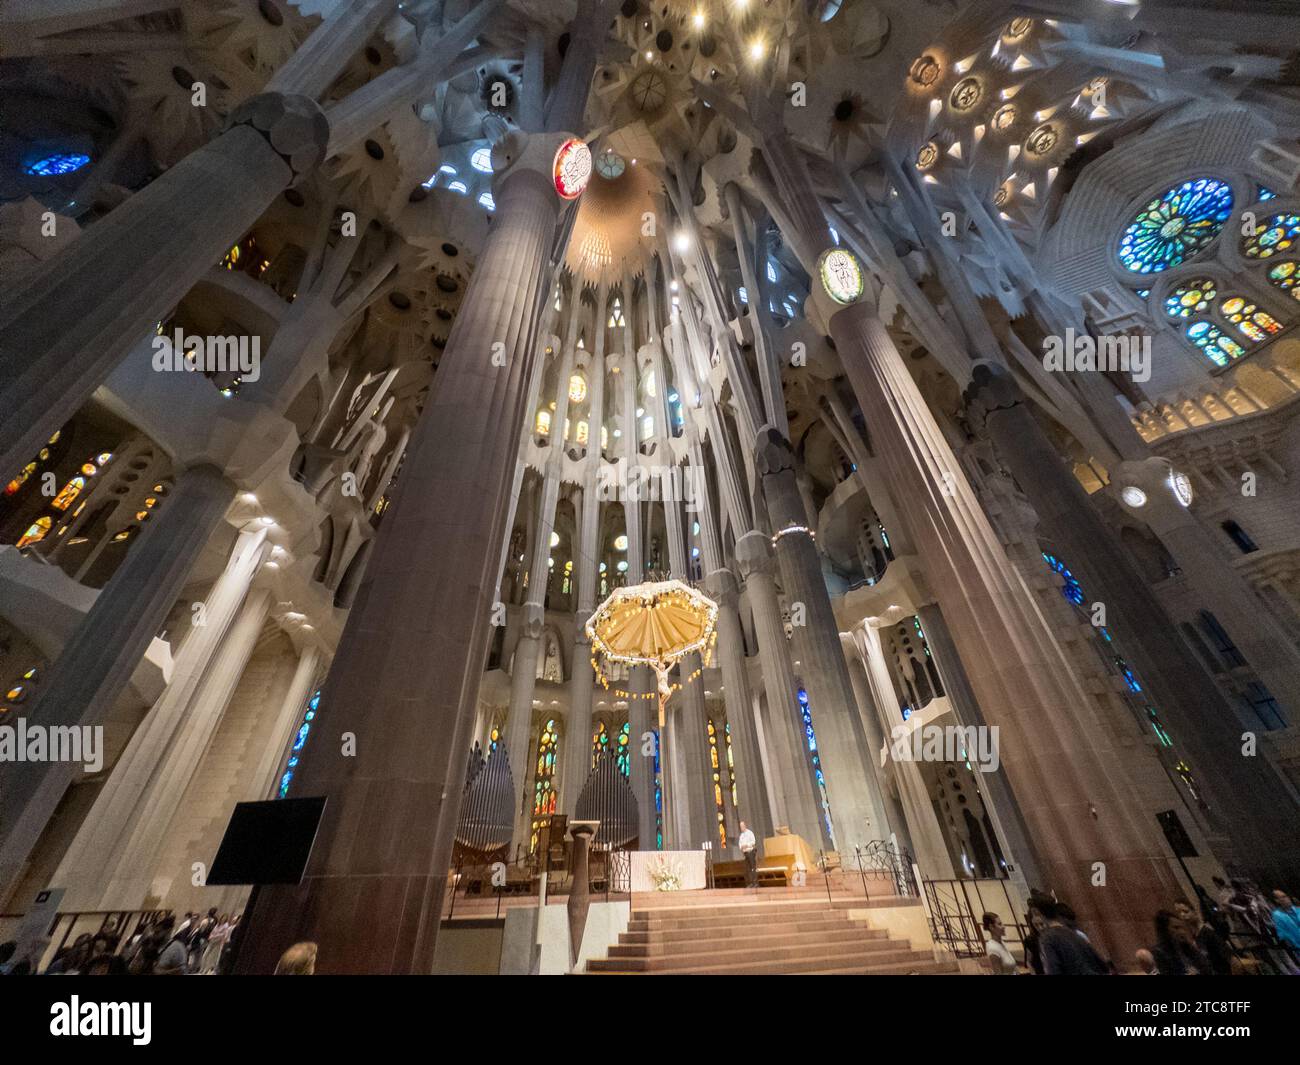 Barcellona, Spagna - 27 agosto 2023: La luce inonda attraverso le vetrate colorate dell'altare della basilica de la Sagrada Familia progettata da Ant Foto Stock